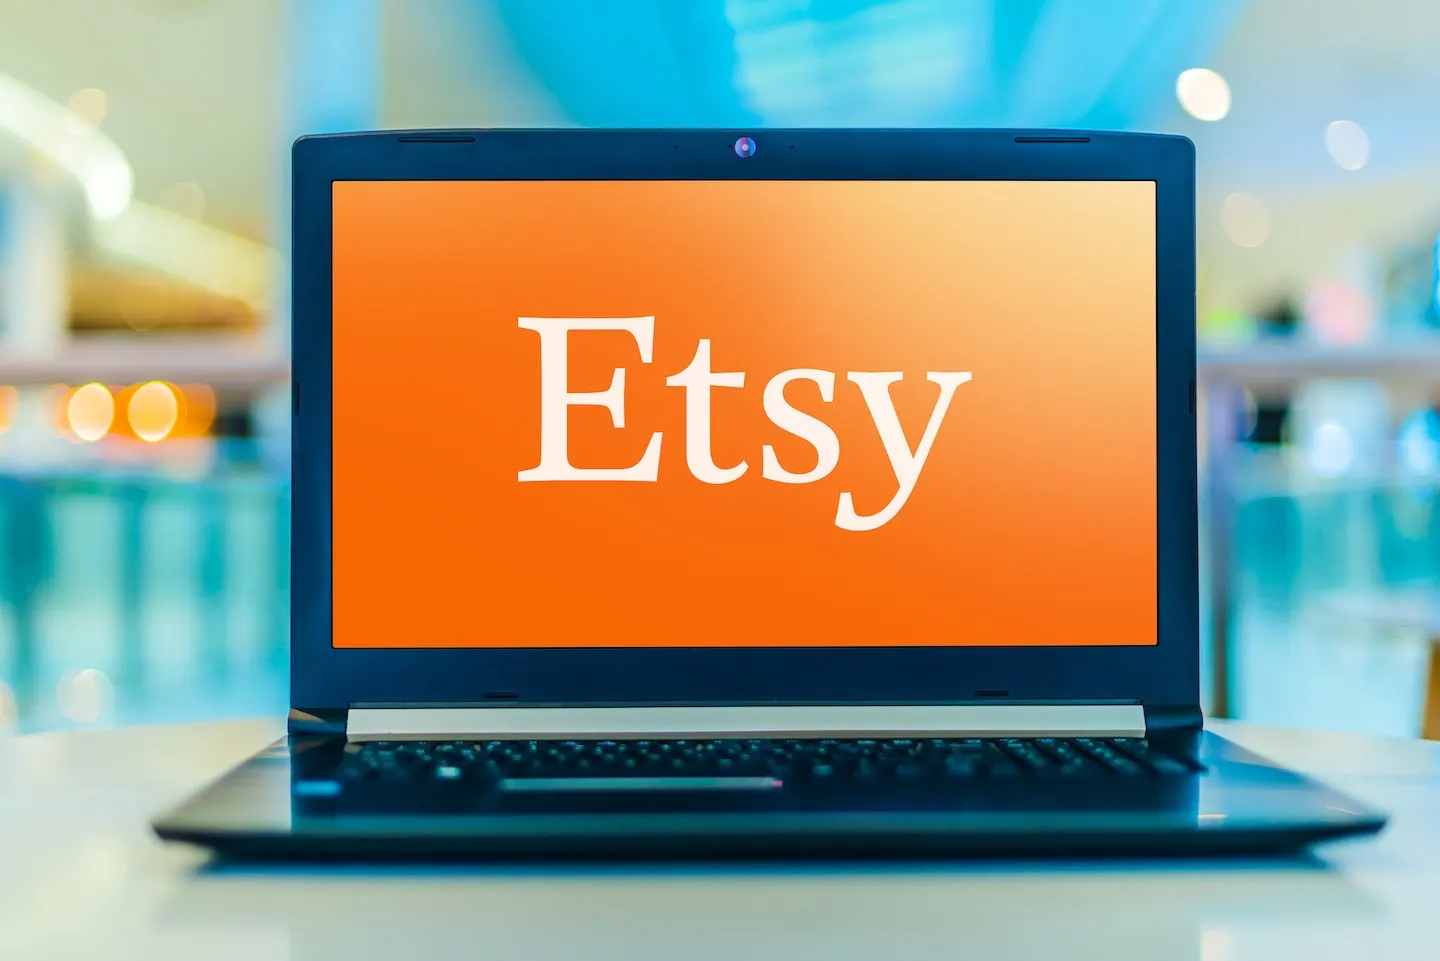 Full screen Etsy logo on laptop screen